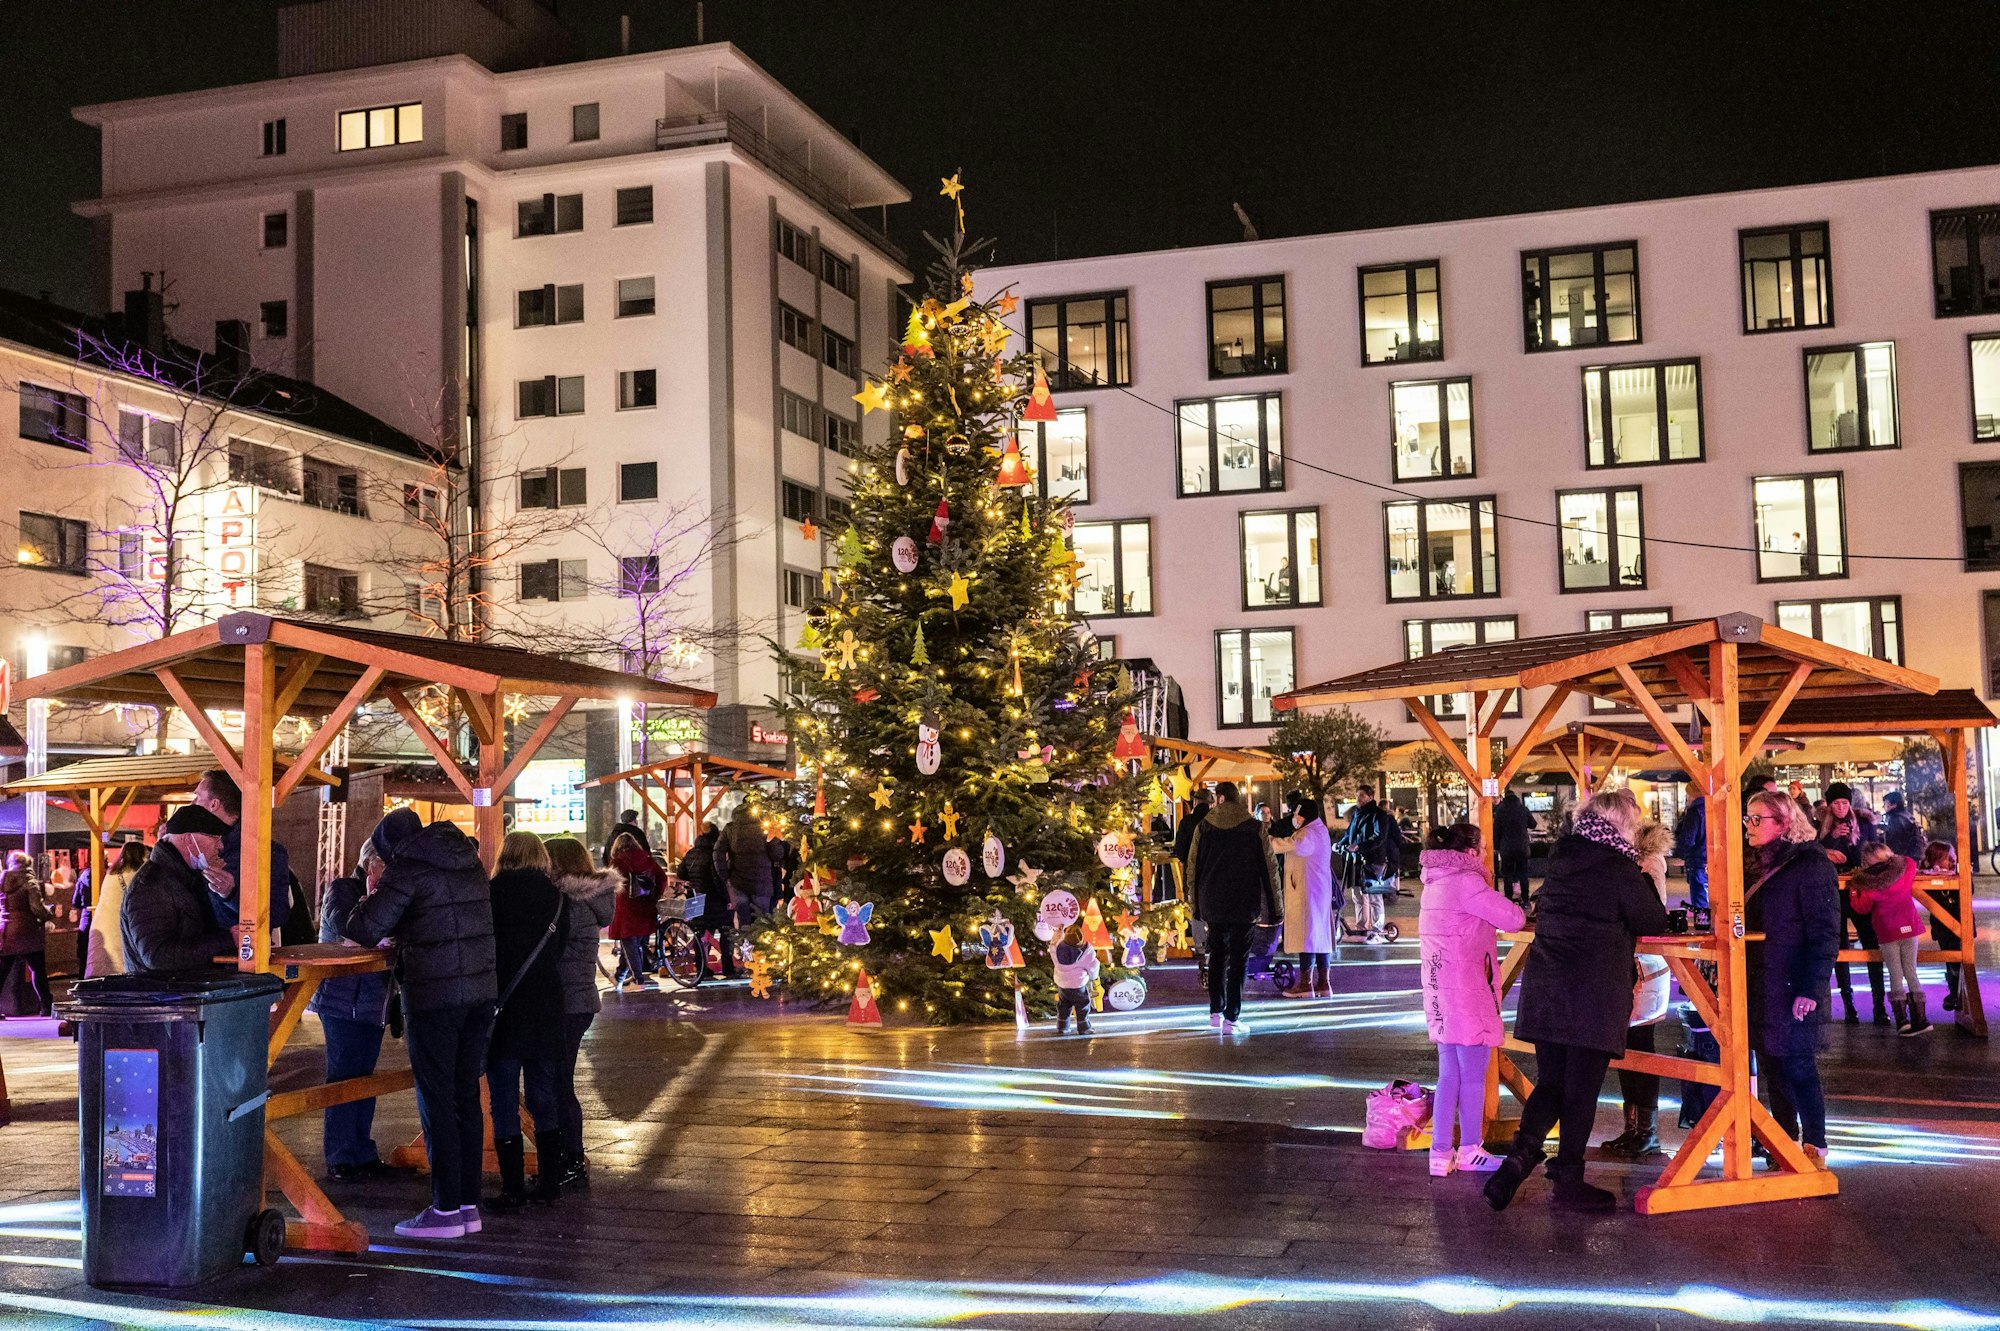 In der Mitte des Maternusplatzes steht ein Weihnachtsbaum. Besucher trinken Glühwein.